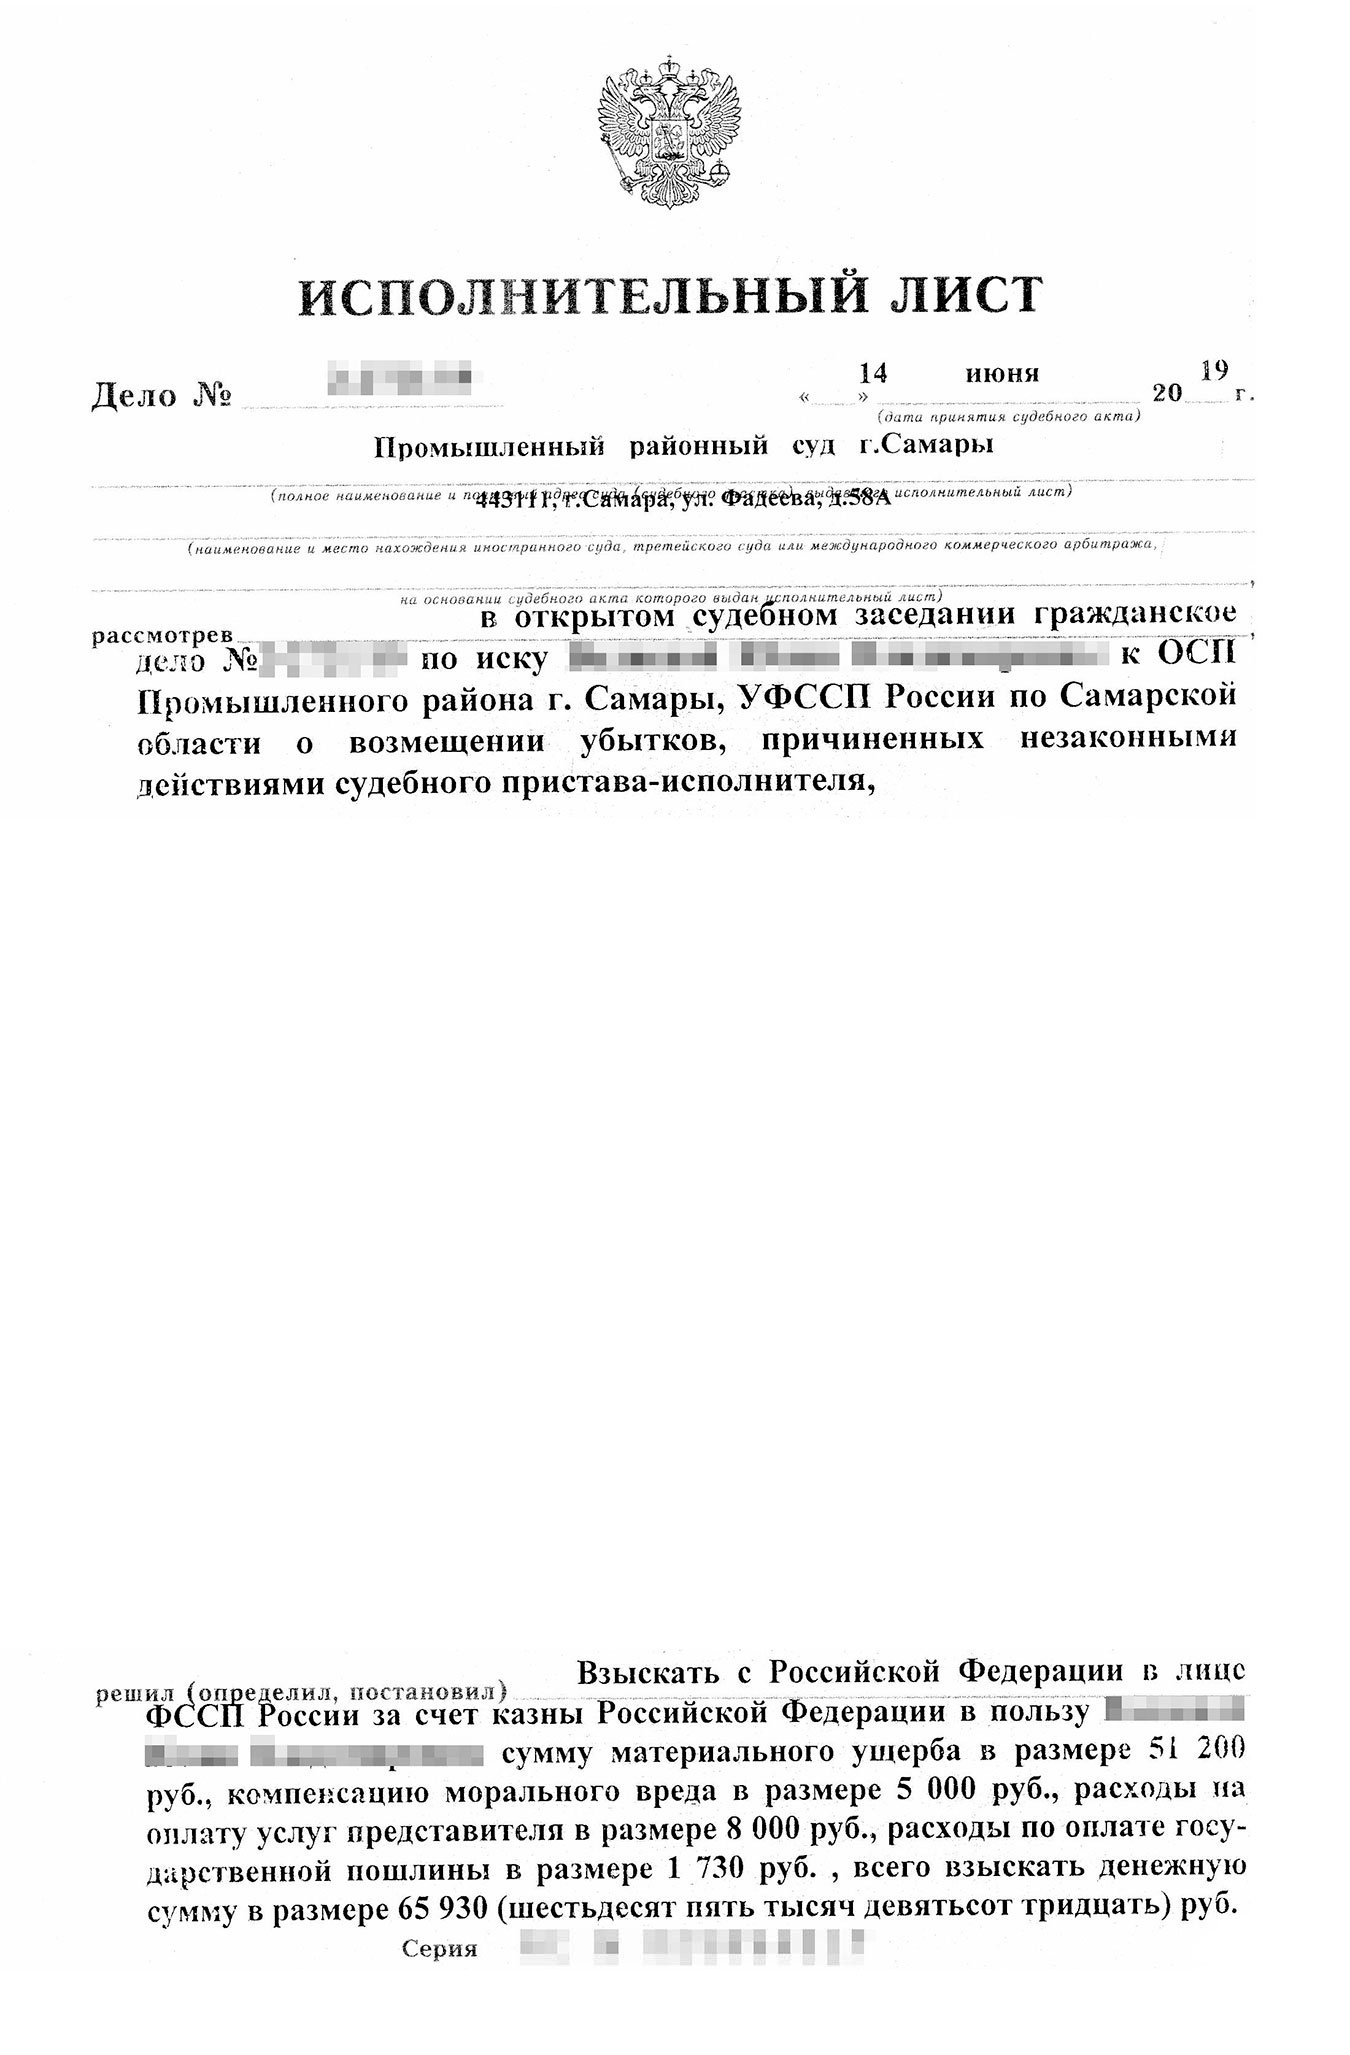 Такой исполнительный лист Юлия получила в канцелярии Промышленного районного суда Самары. Его нужно было представить в Министерство финансов РФ